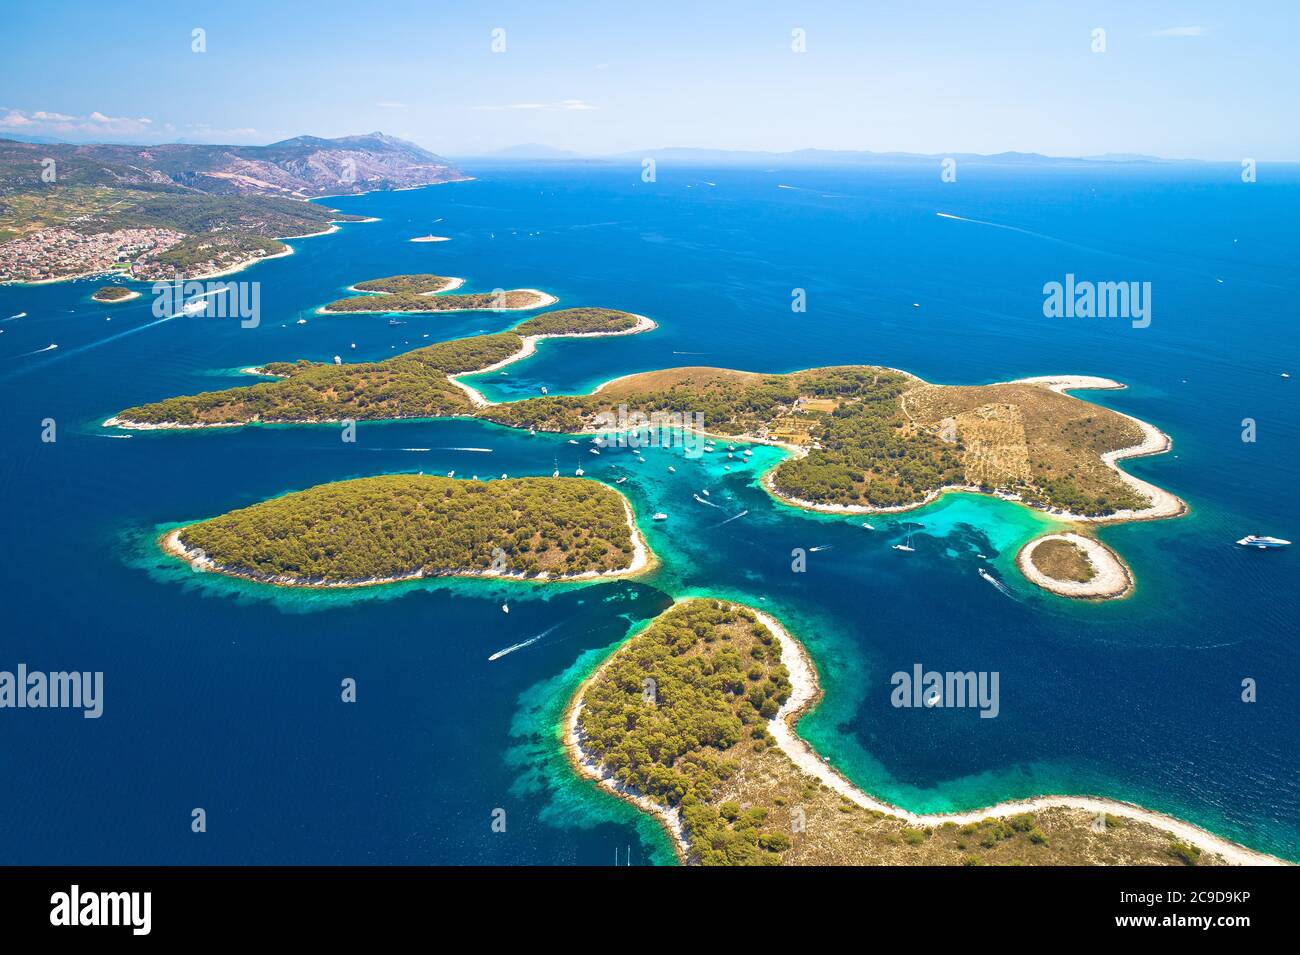 Pakleni otoci yachting destination arcipelago vue aérienne, île de Hvar, région de Dalmatie en Croatie Banque D'Images